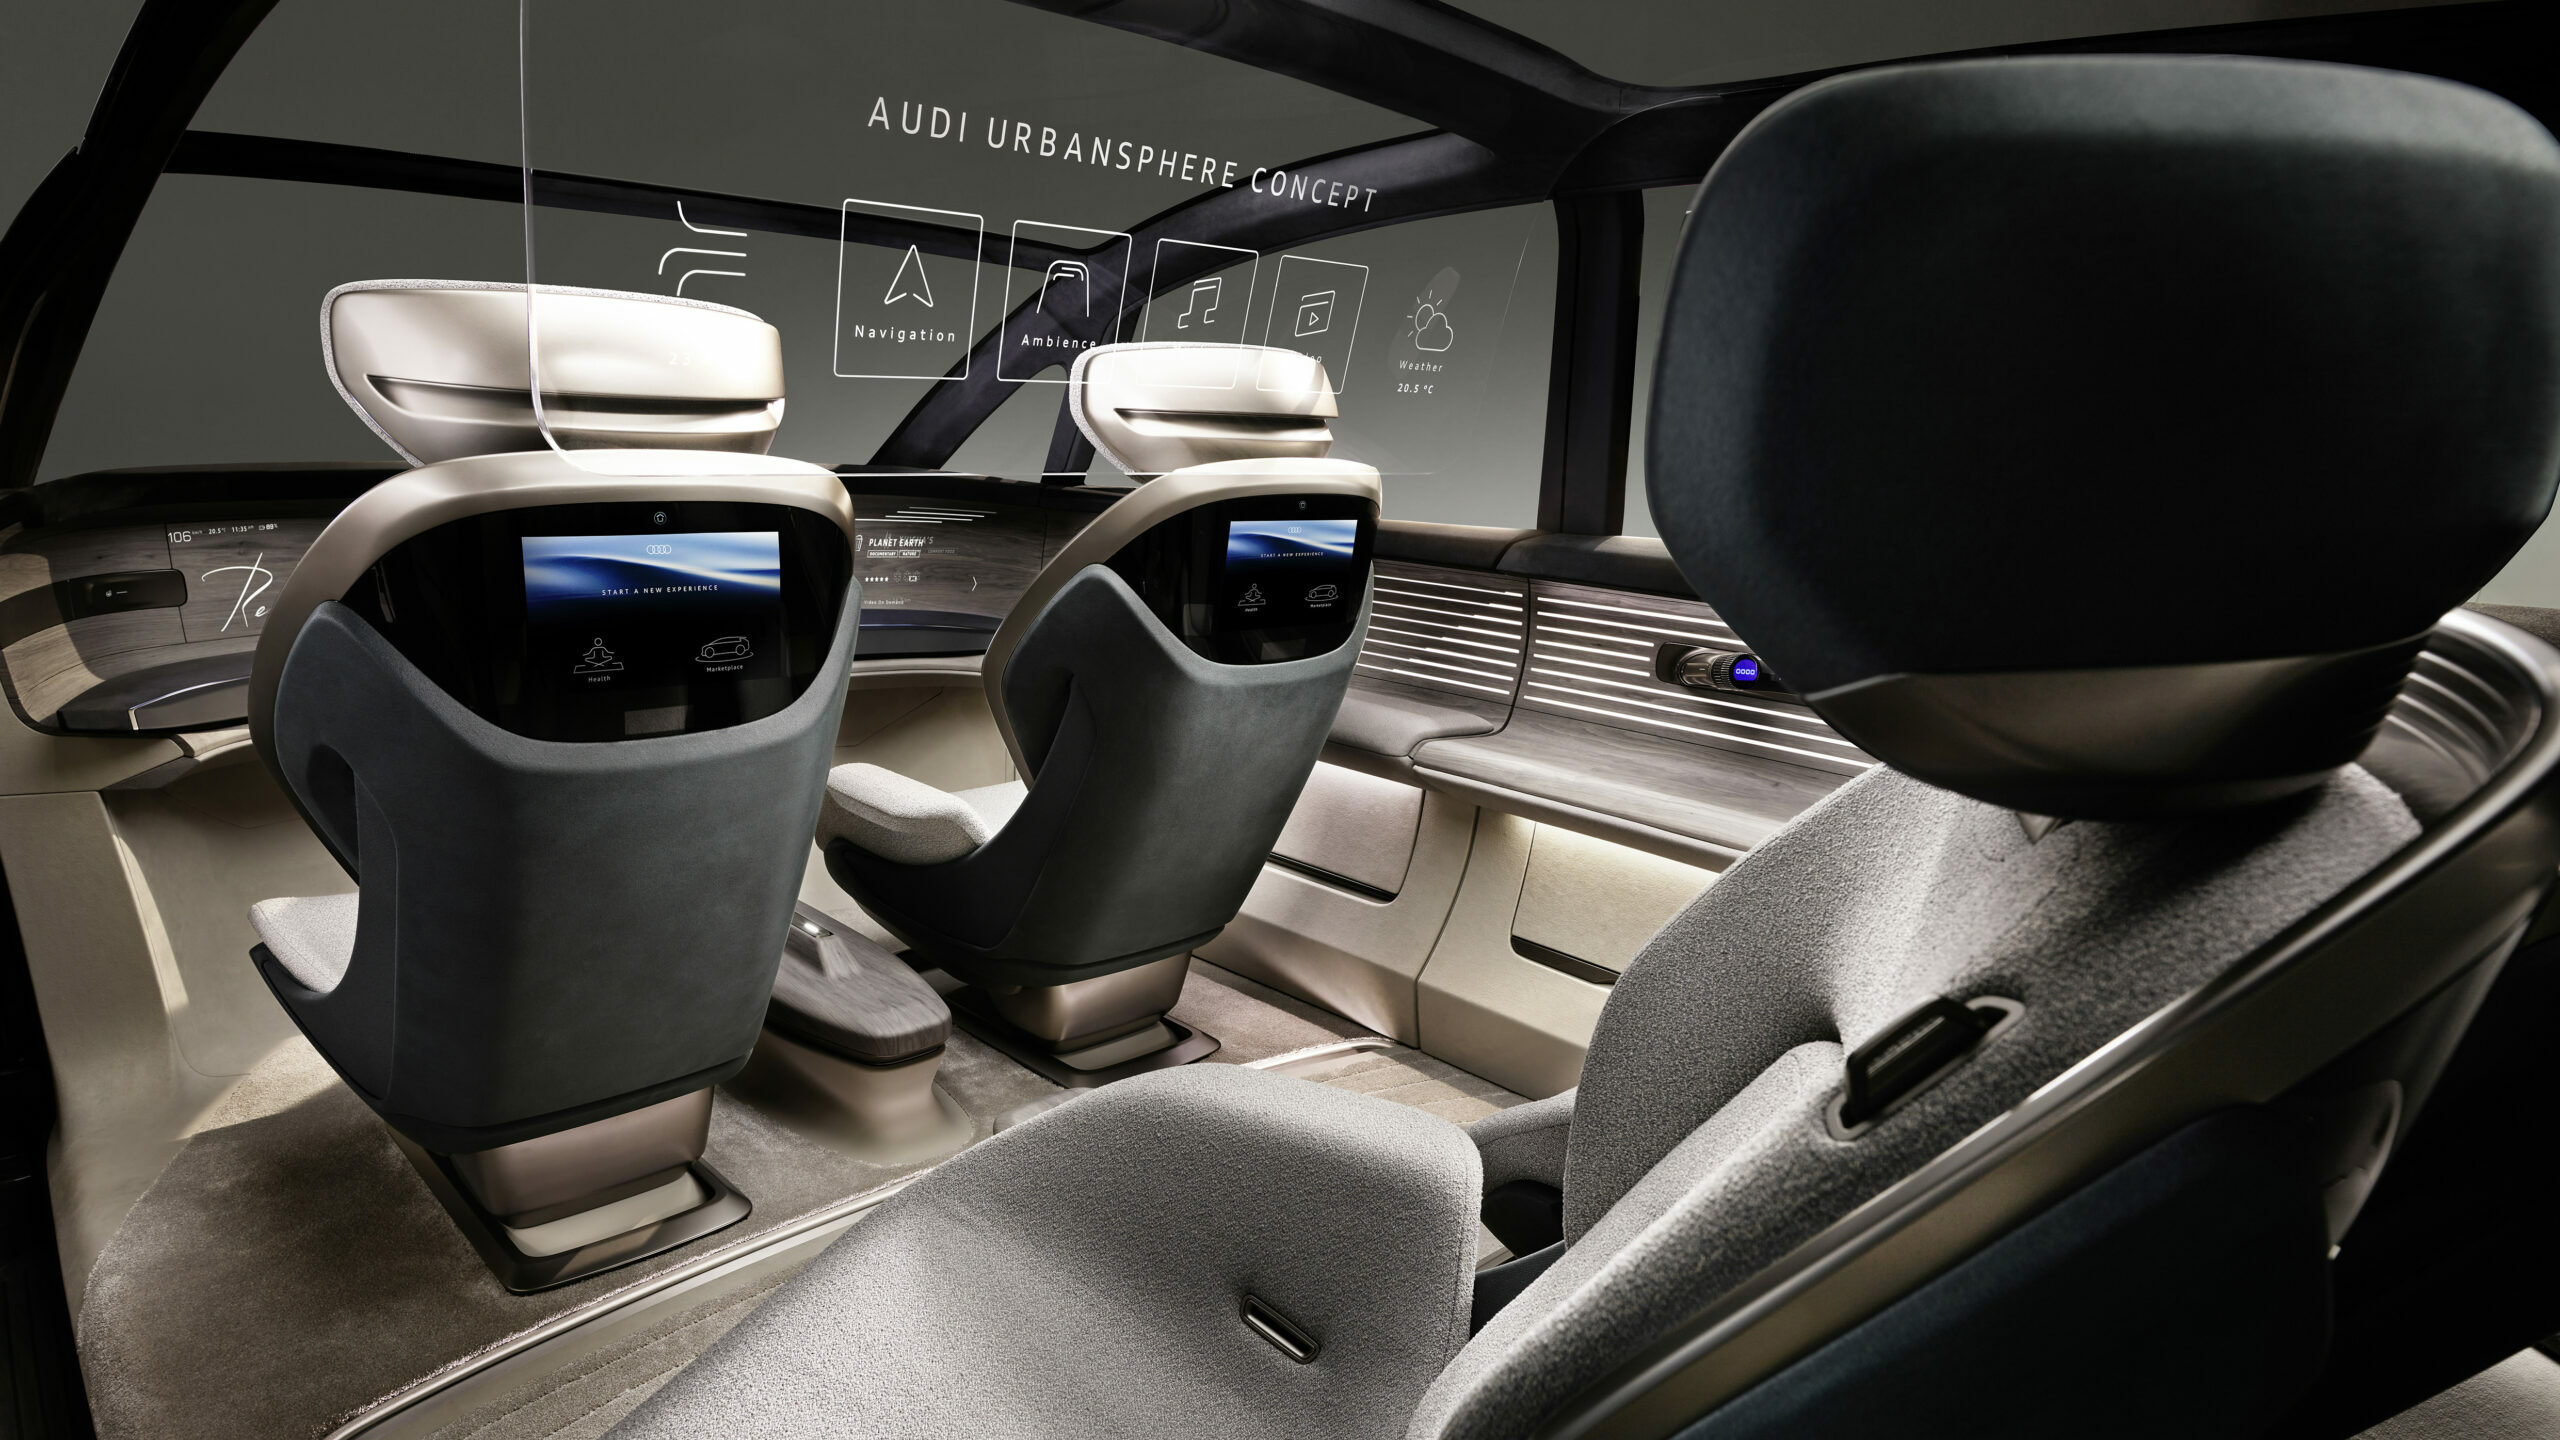 Der Audi urbansphere concept bietet an Bord eine große Vielfalt an Optionen, diese Freiheit für individuell gestaltbare Erlebnisse zu nutzen: Kommunikation oder Entspannung, Arbeit oder den Rückzug in eine Privatsphäre.